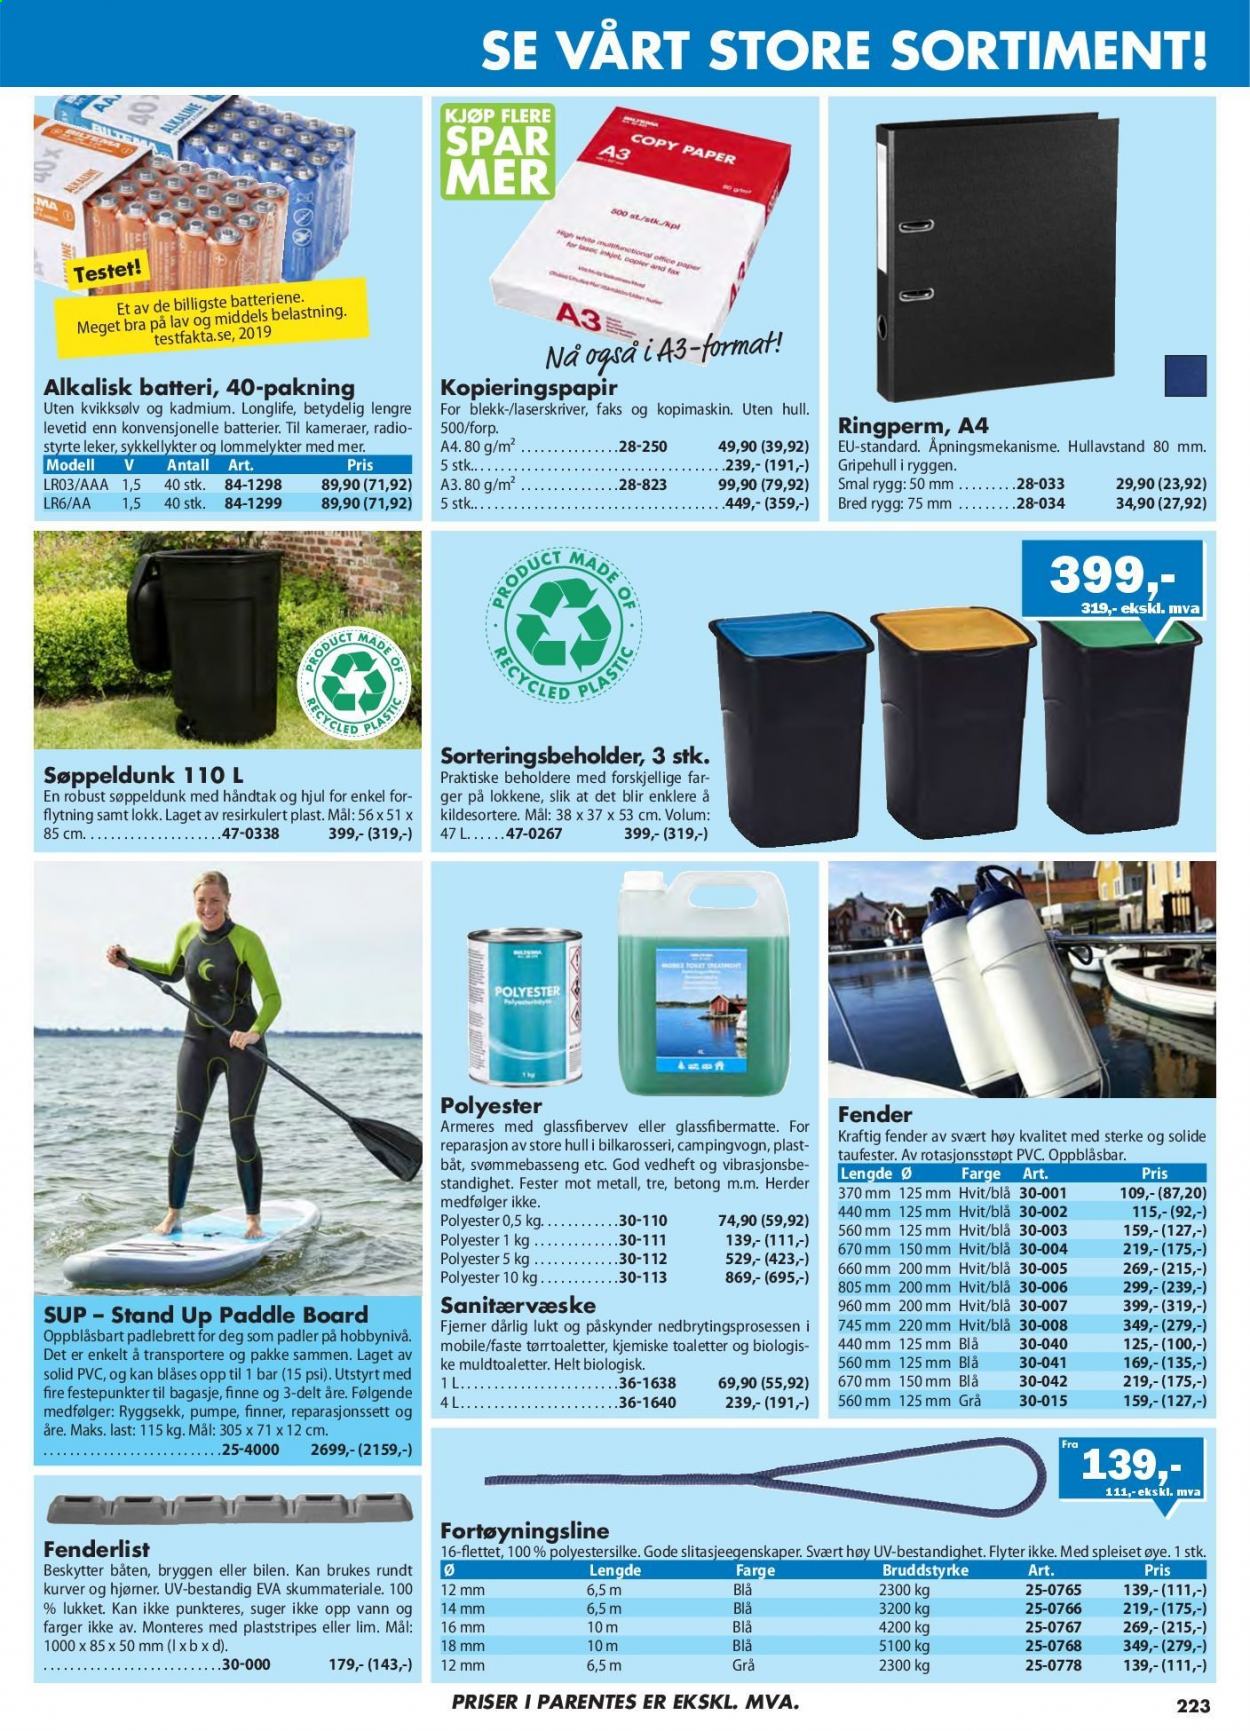 thumbnail - Kundeavis Biltema - Produkter fra tilbudsaviser - kurv, batteri, svømmebasseng. Side 223.